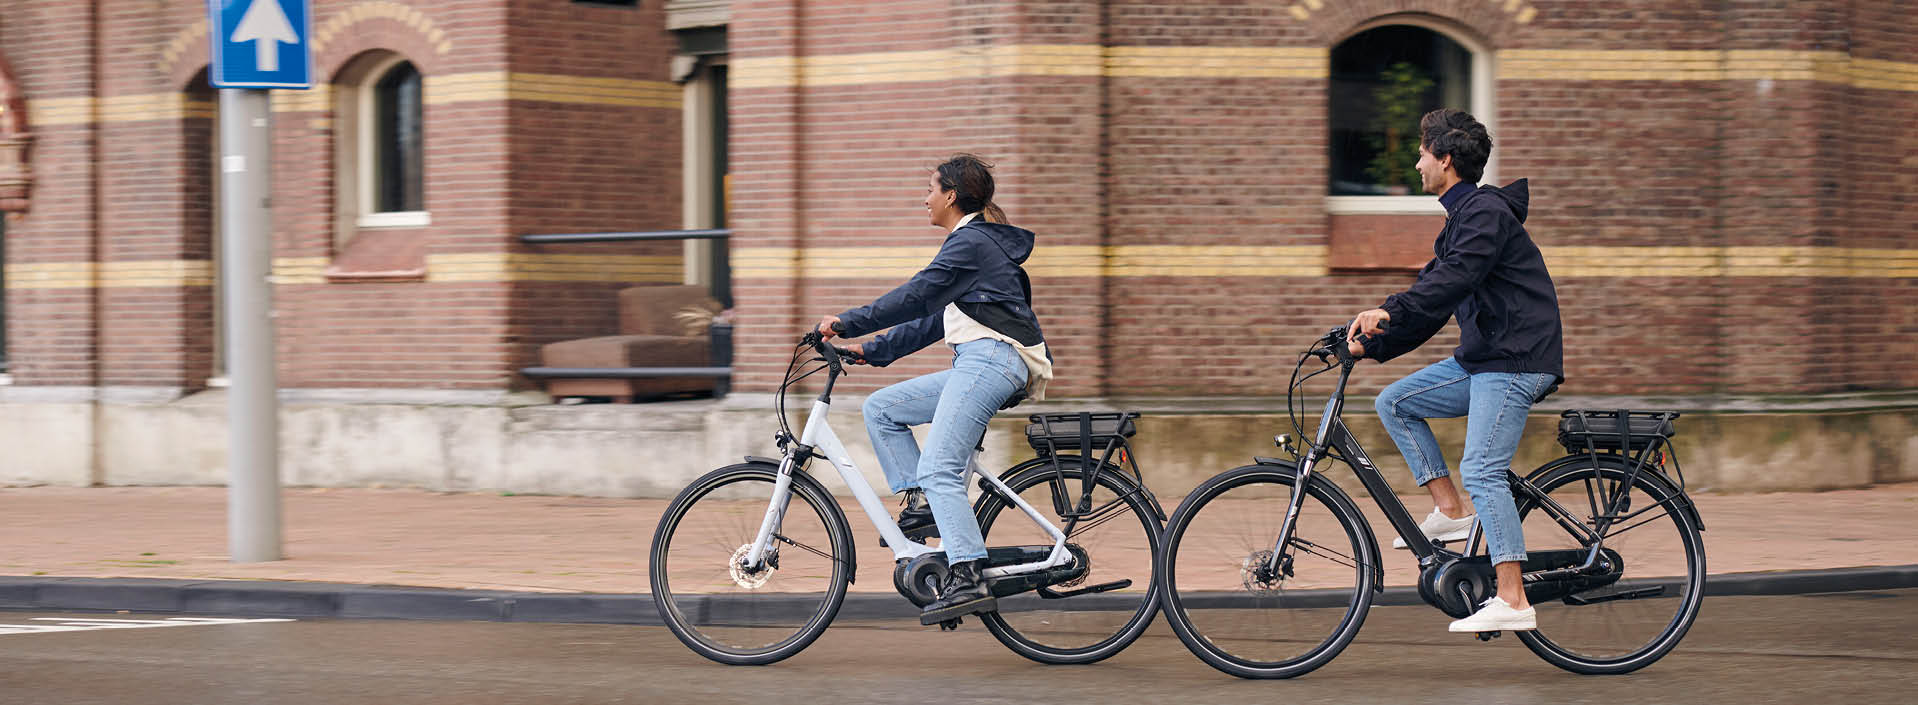 Zwei Jugendliche fahren mit ihren Fahrrädern mit Spanninga-Beleuchtung zur Schule